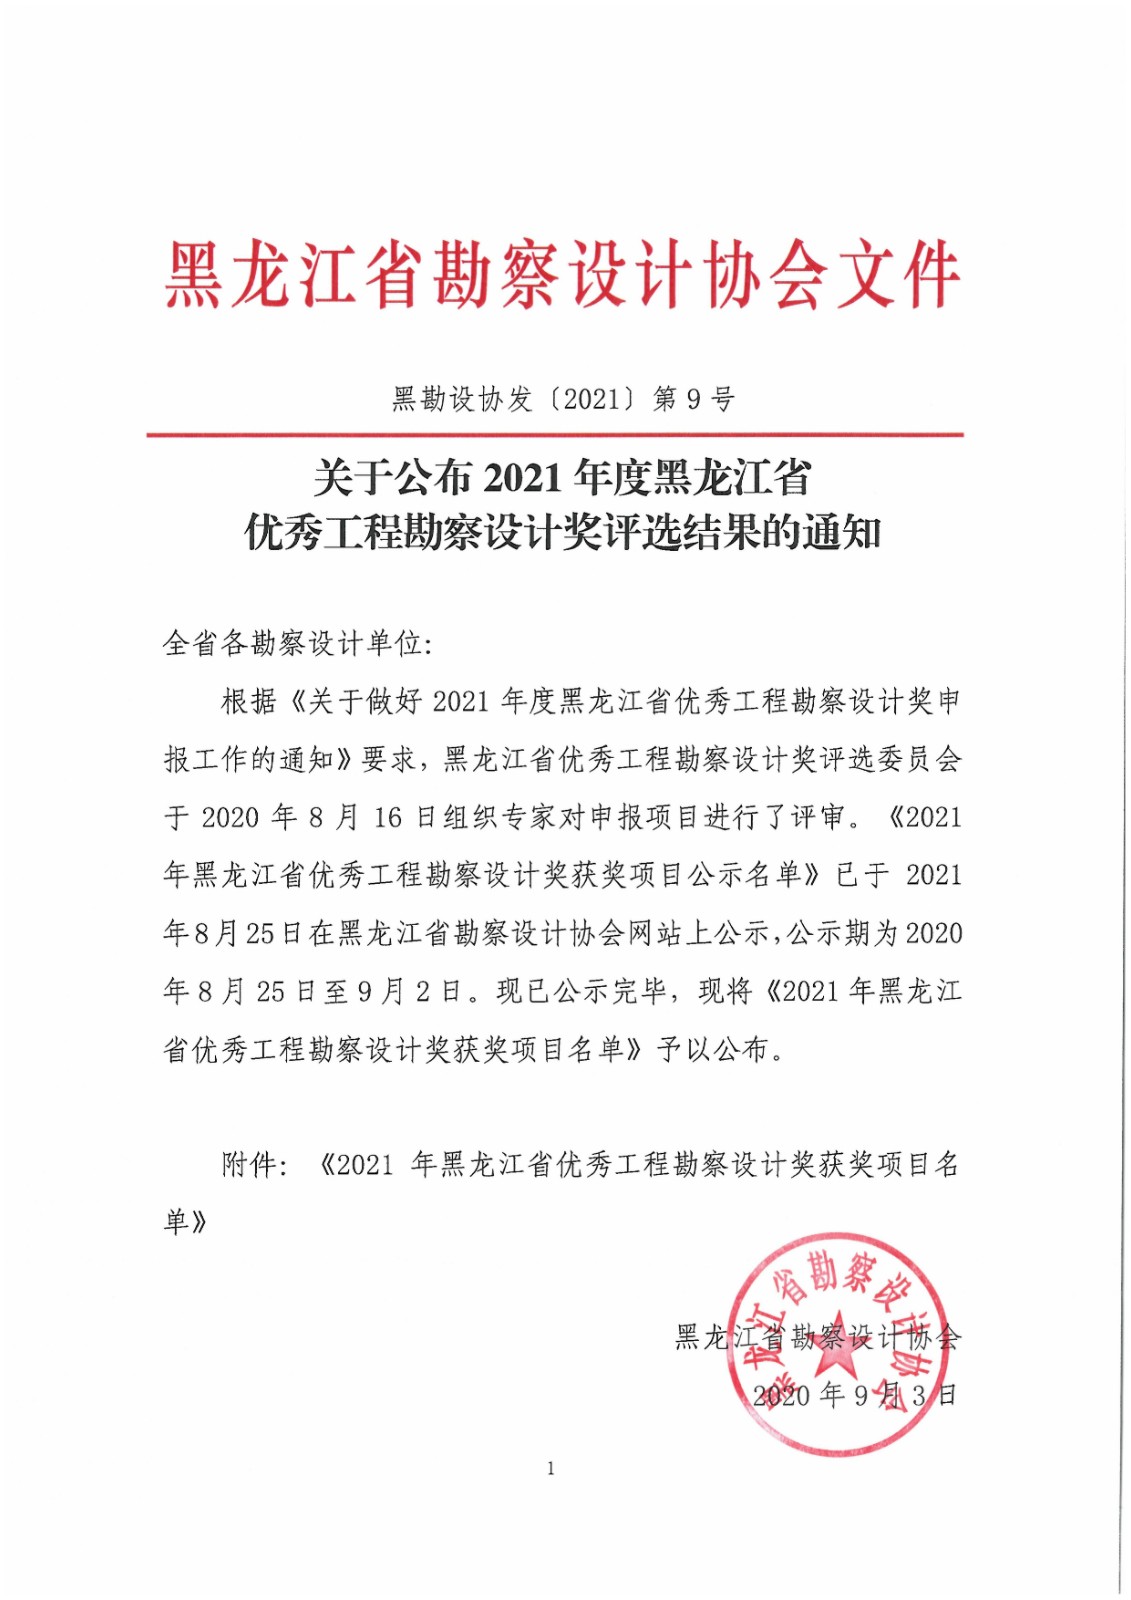 关于公布2021年度黑龙江省优秀工程勘察设计奖评选结果的通知-黑勘设协〔2021〕第9号-盖章.jpg